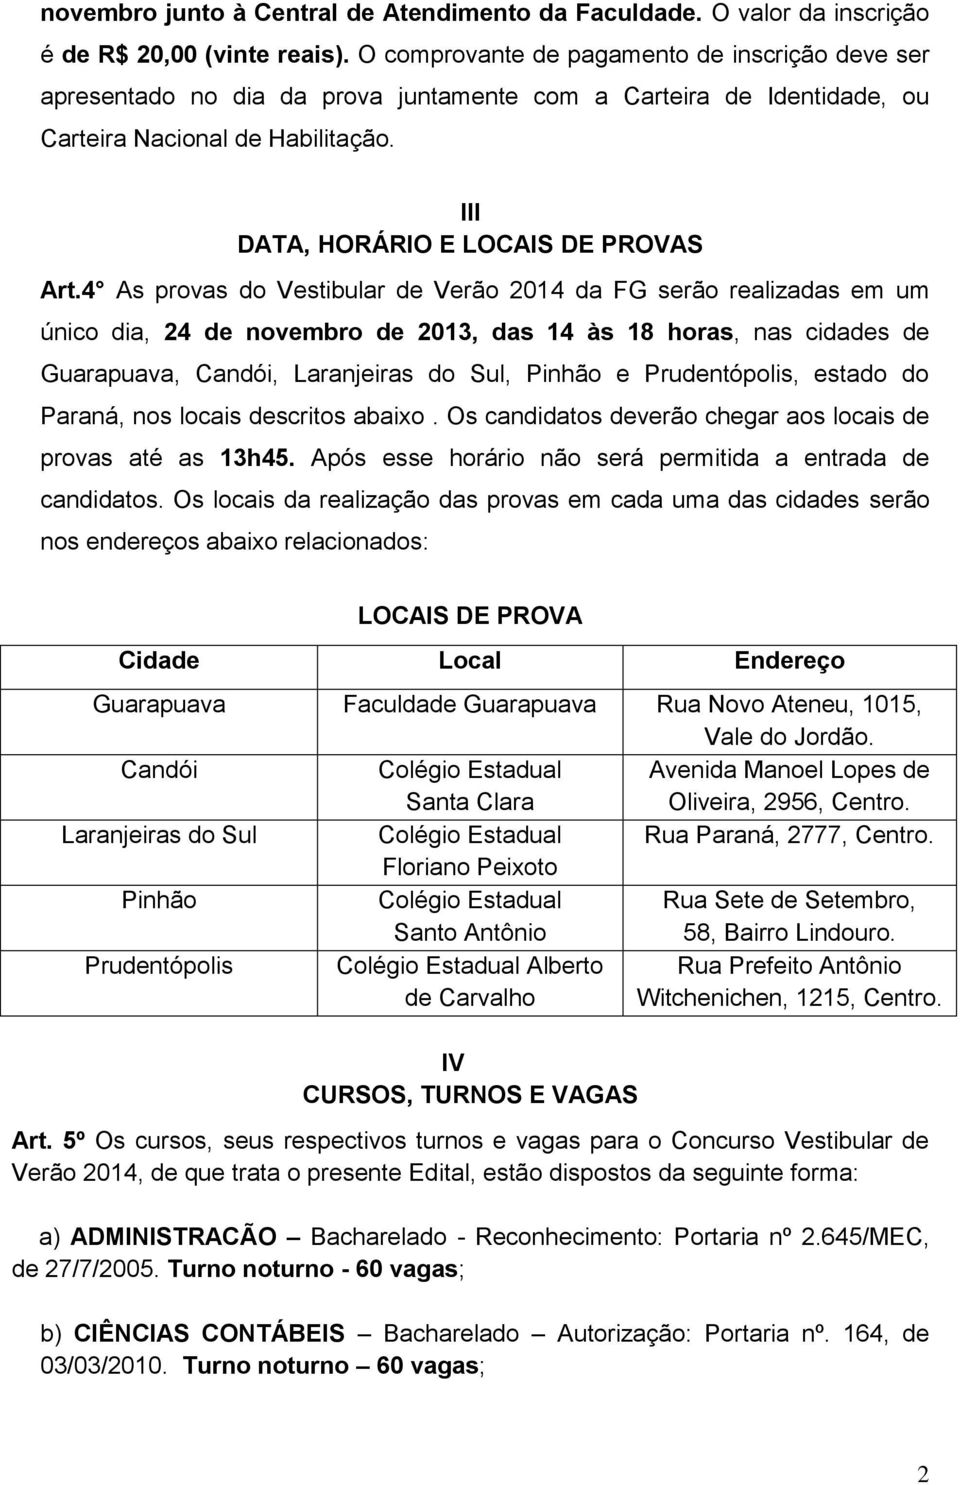 4 As provas do Vestibular de Verão 2014 da FG serão realizadas em um único dia, 24 de novembro de 2013, das 14 às 18 horas, nas cidades de Guarapuava, Candói, Laranjeiras do Sul, Pinhão e